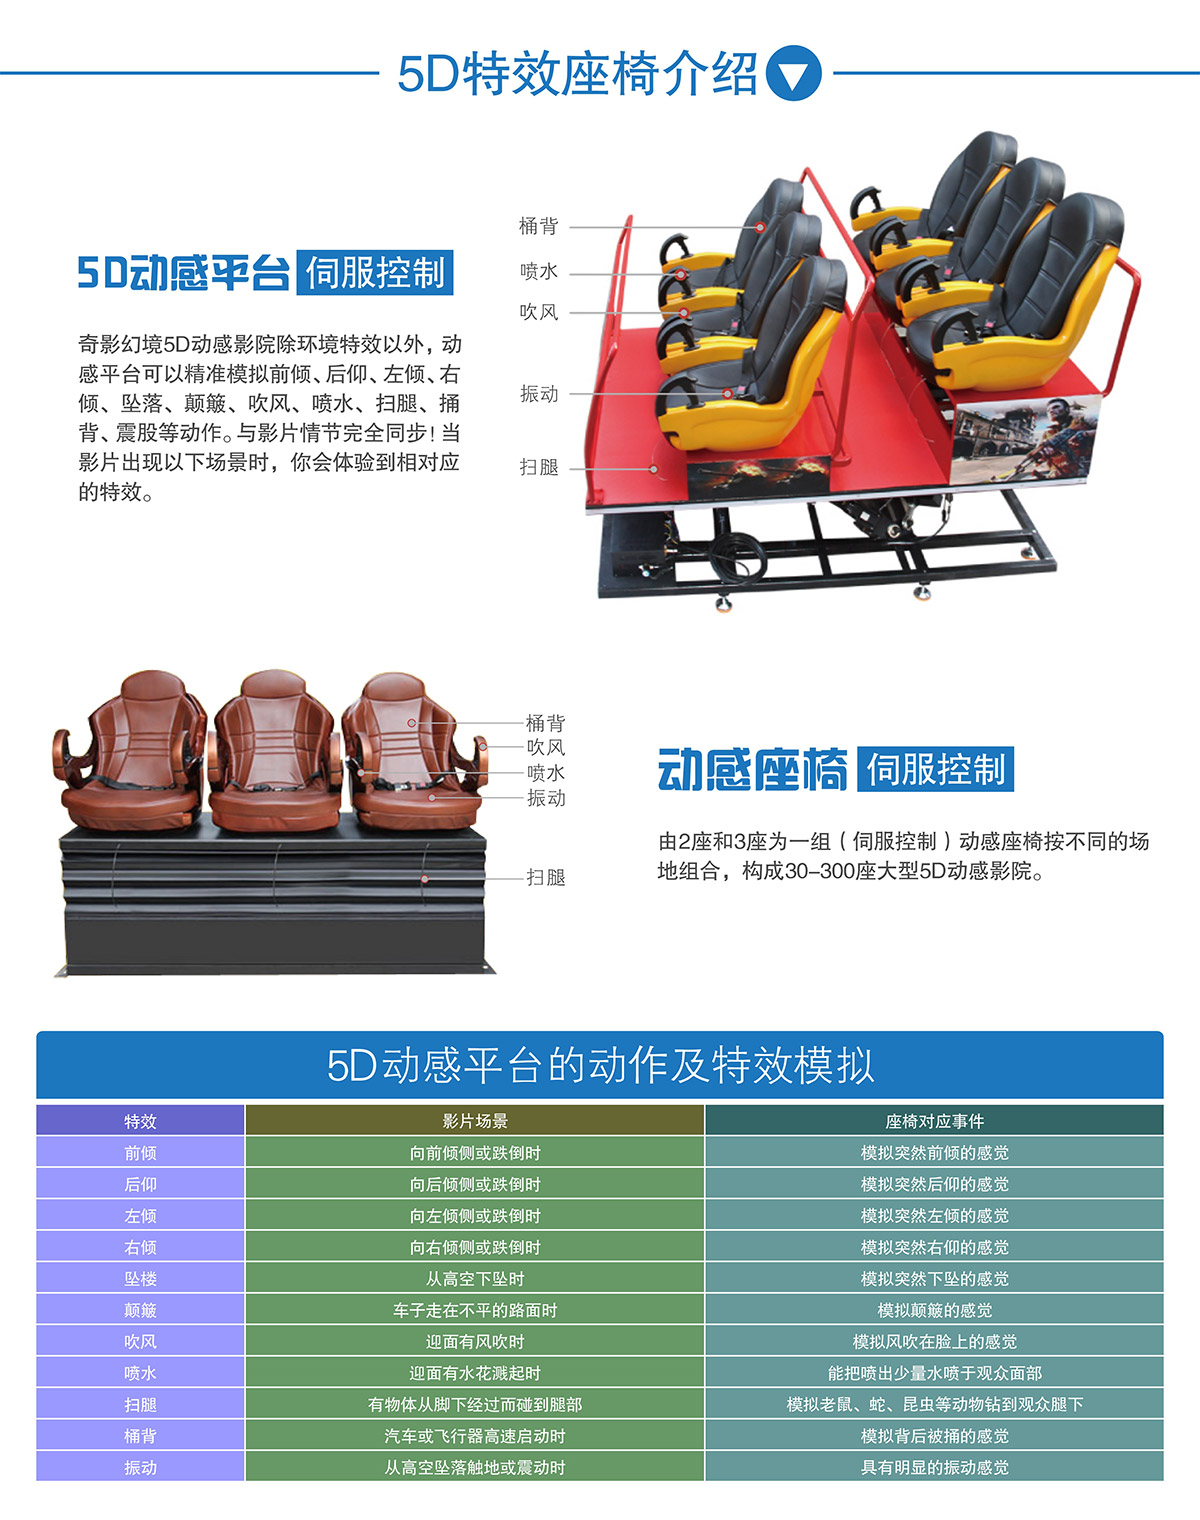 球幕影院中大型5D动感特效座椅介绍.jpg